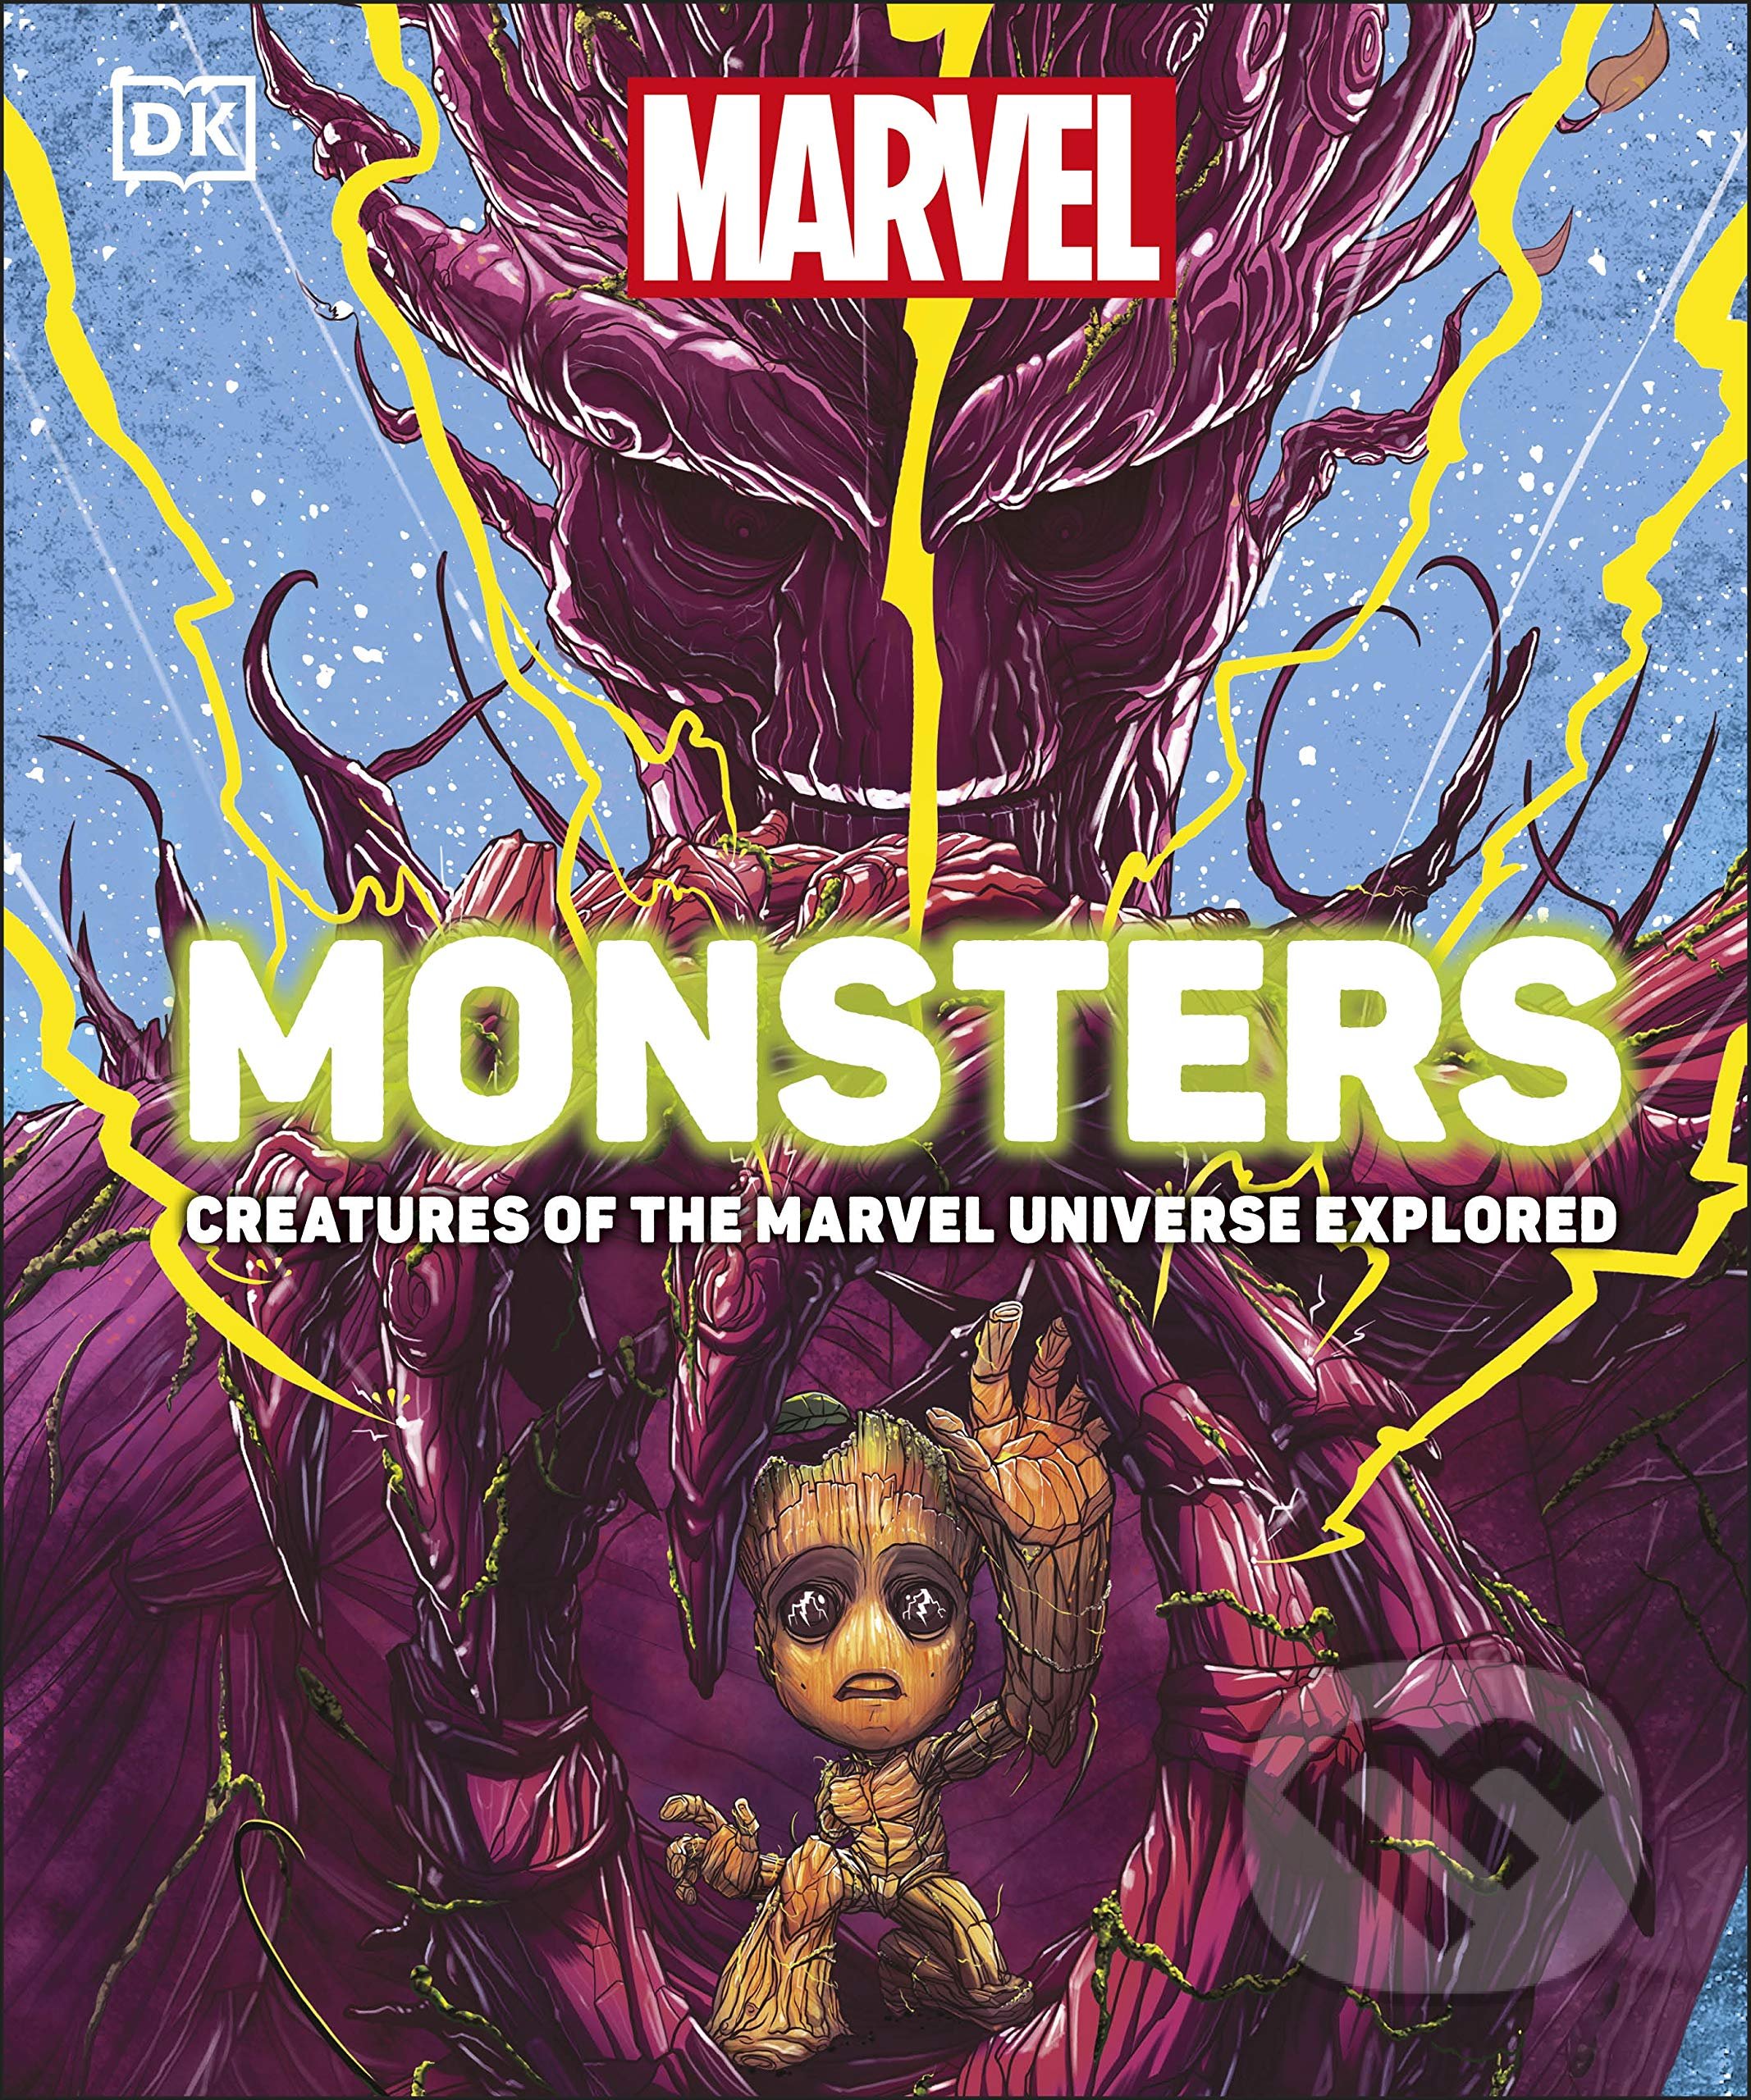 Marvel Monsters - Kelly Knox, Dorling Kindersley, 2021